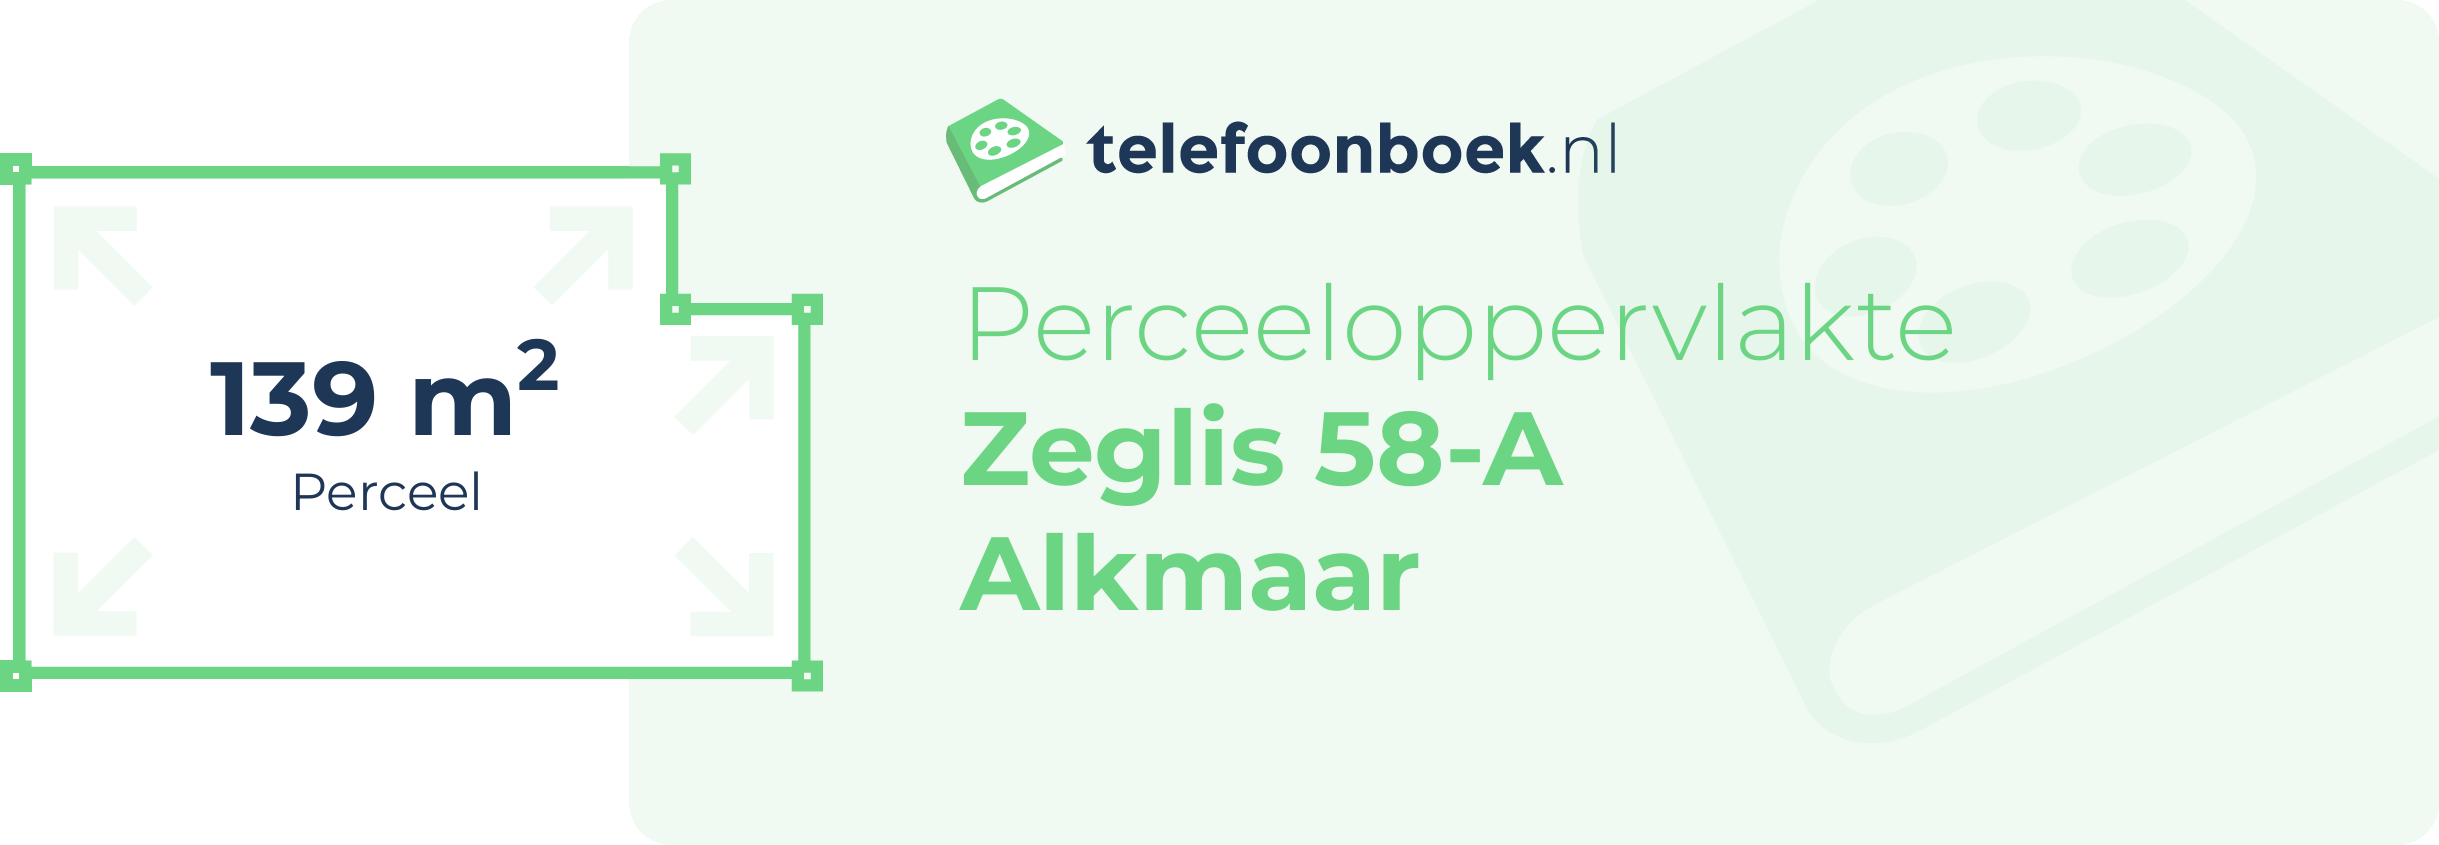 Perceeloppervlakte Zeglis 58-A Alkmaar